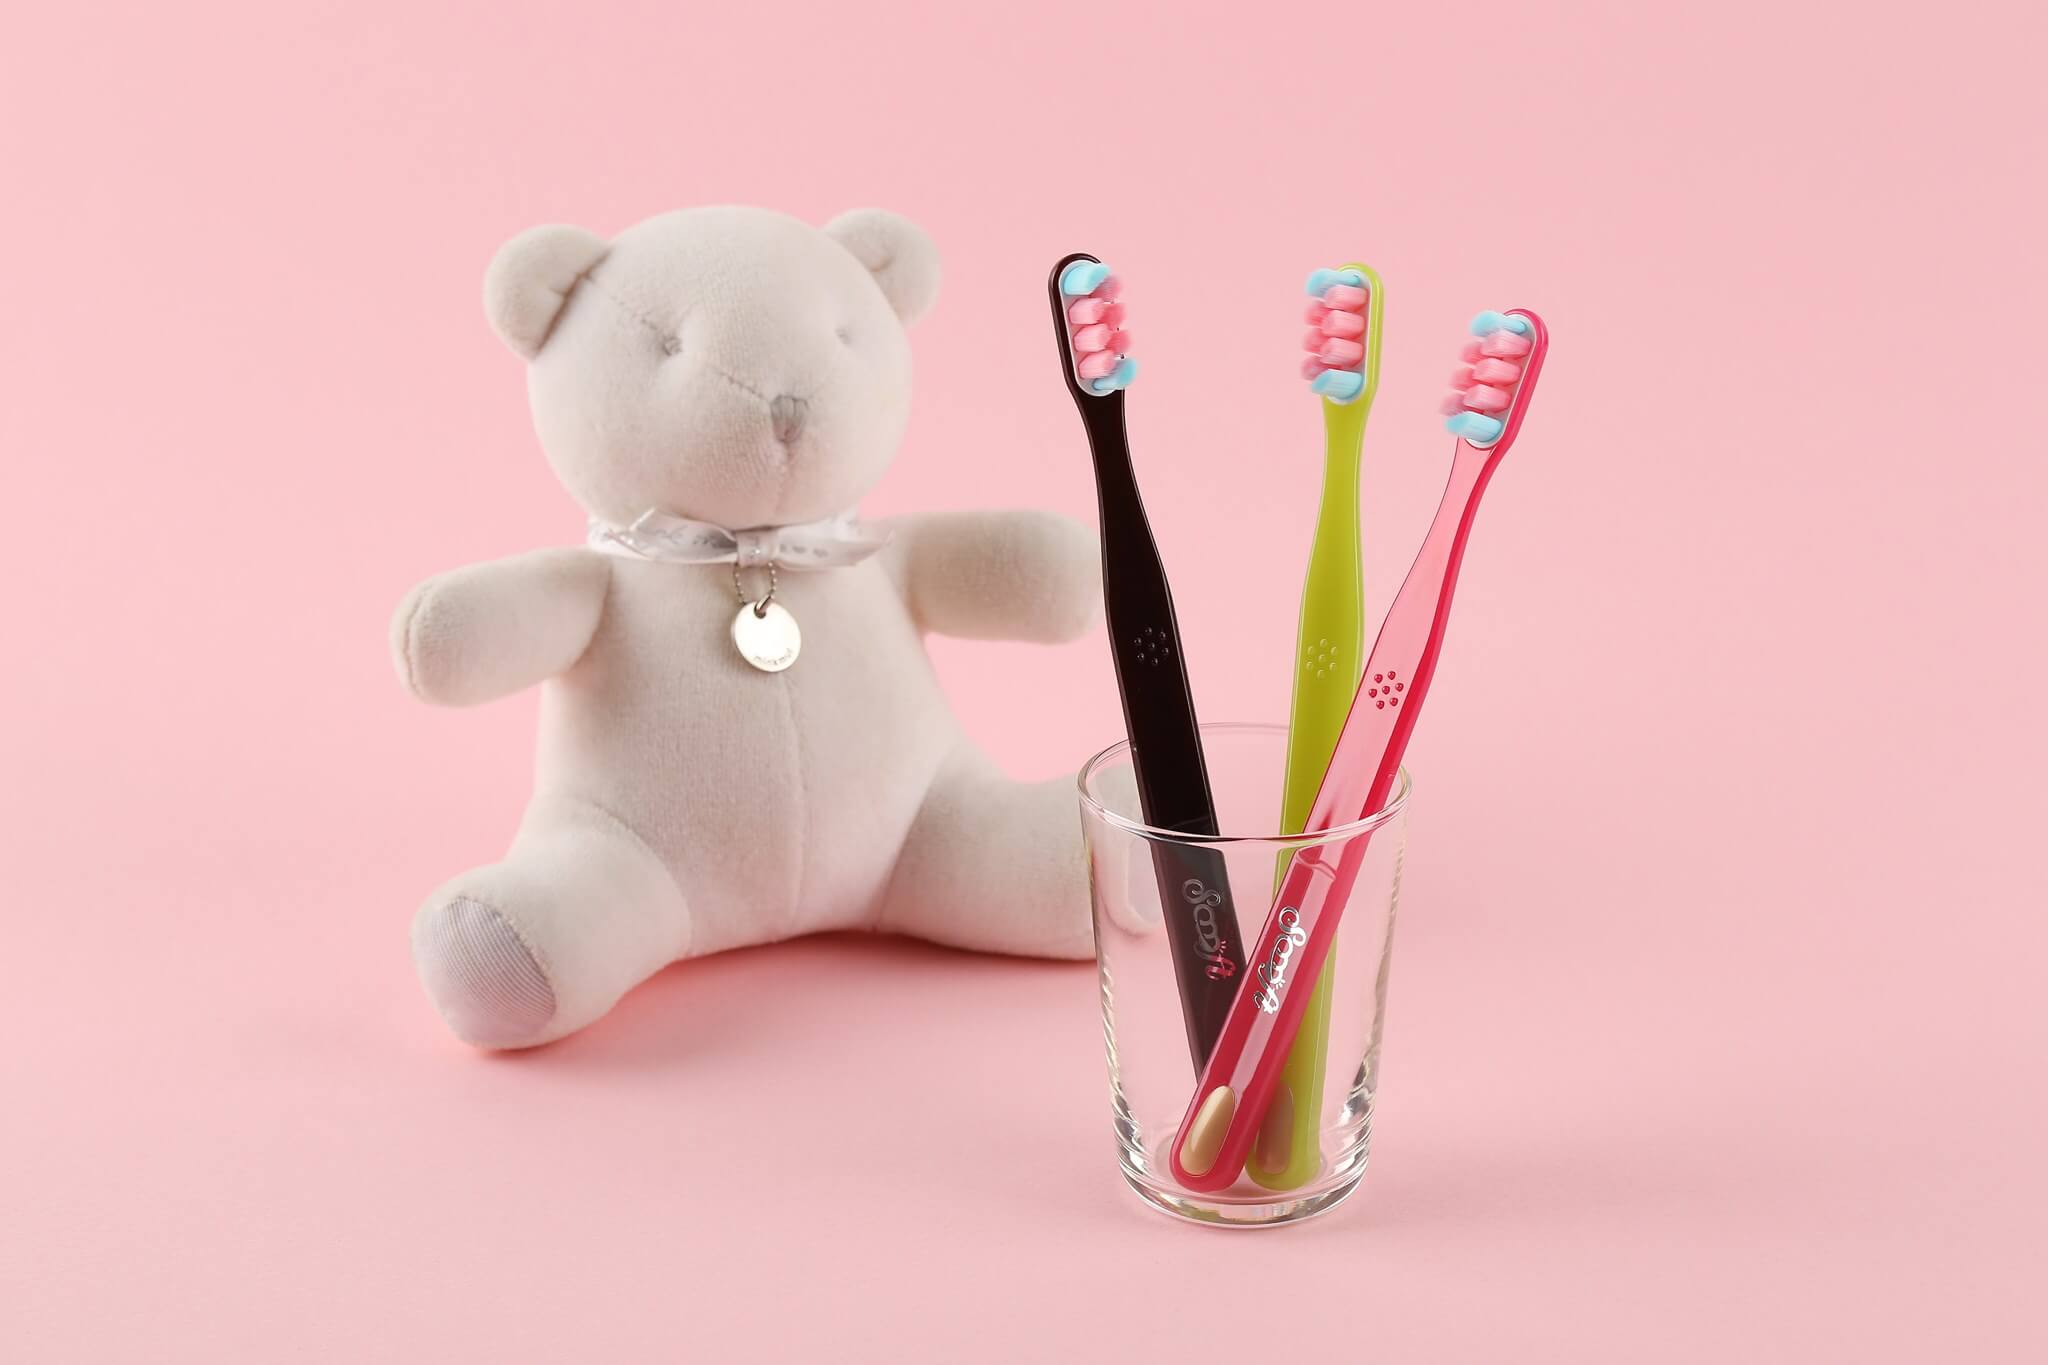 Linko Scoooft รุ่น Gum Oral Care  แปรงสีฟัน Linko Soooft รุ่น Gum Oral Careคุณสมบัติพิเศษ ทุกชิ้นผลิตด้วยมือ ขนแปรงที่เป็นเอกลักษณ์ เพื่อให้ใช้แรงในการแปรงน้อยที่สุด แปรงฟันและนวดเหงือกให้สะอาดพร้อมกัน ขนที่นุ่มพิเศษระดับ 4เหมาะสำหรับ ผู้ที่แปรงฟันแรง มีปัญหาเหงือกร่น ใช้ฟันปลอม ผู้ที่ตั้งครรภ์ และมีอายุมากกว่า 40 ปีลักษณะขนแปรง ขนแปรงเรียวแหลมชนิดนุ่ม หนาและแน่นเป็นพิเศษ ขนแปรงมากกว่า 7,000 เส้นมากที่สุดในโลก ปลายขนแปรงหนาน้อยกว่า 0.01มม.